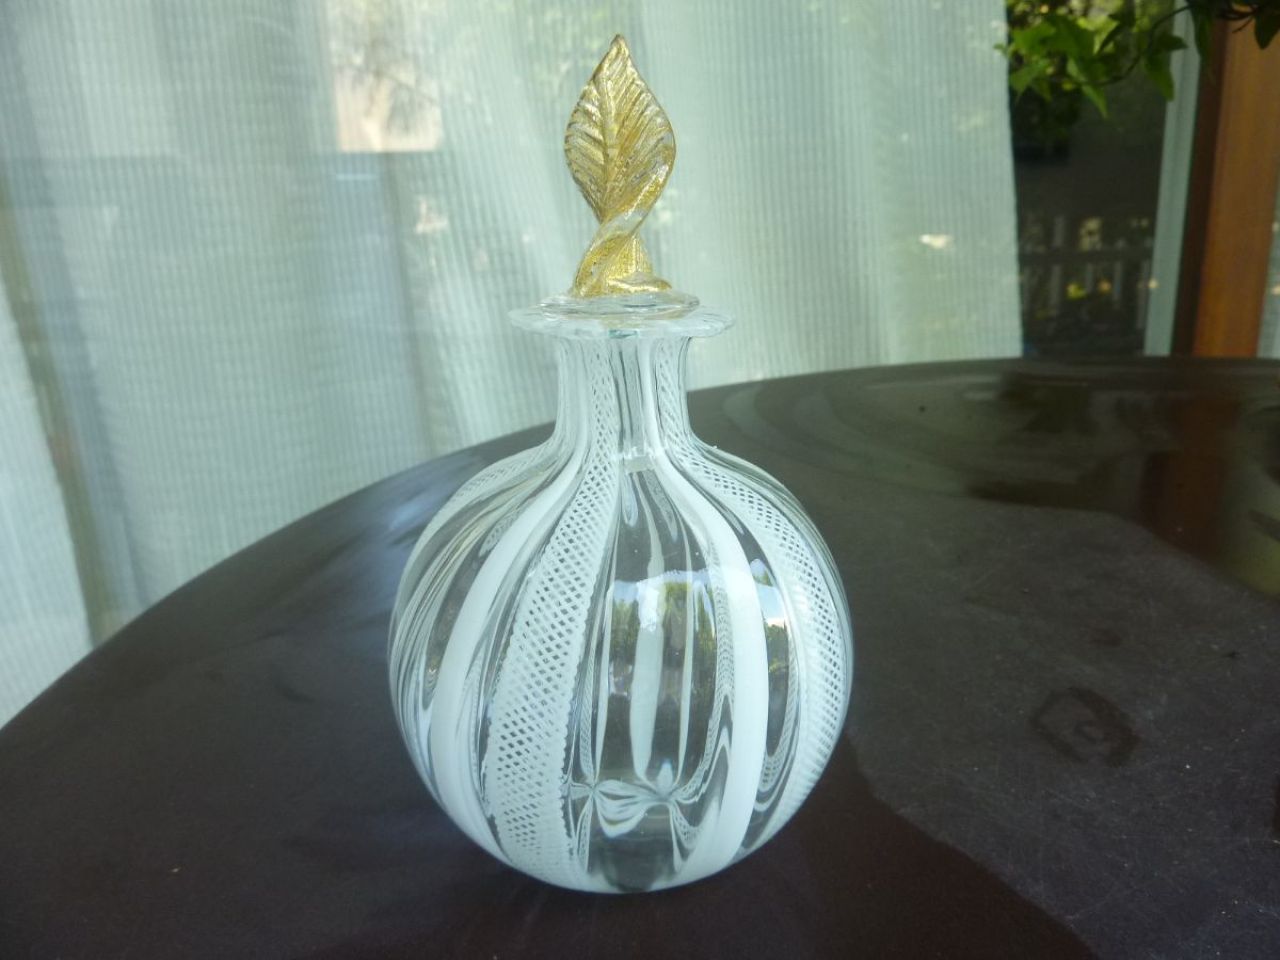 flacon à parfum en verre soufflé "filigrana", magnifique réalisation des artisans de Murano, bouchon en cristal à forme de feuille recouverte d'or